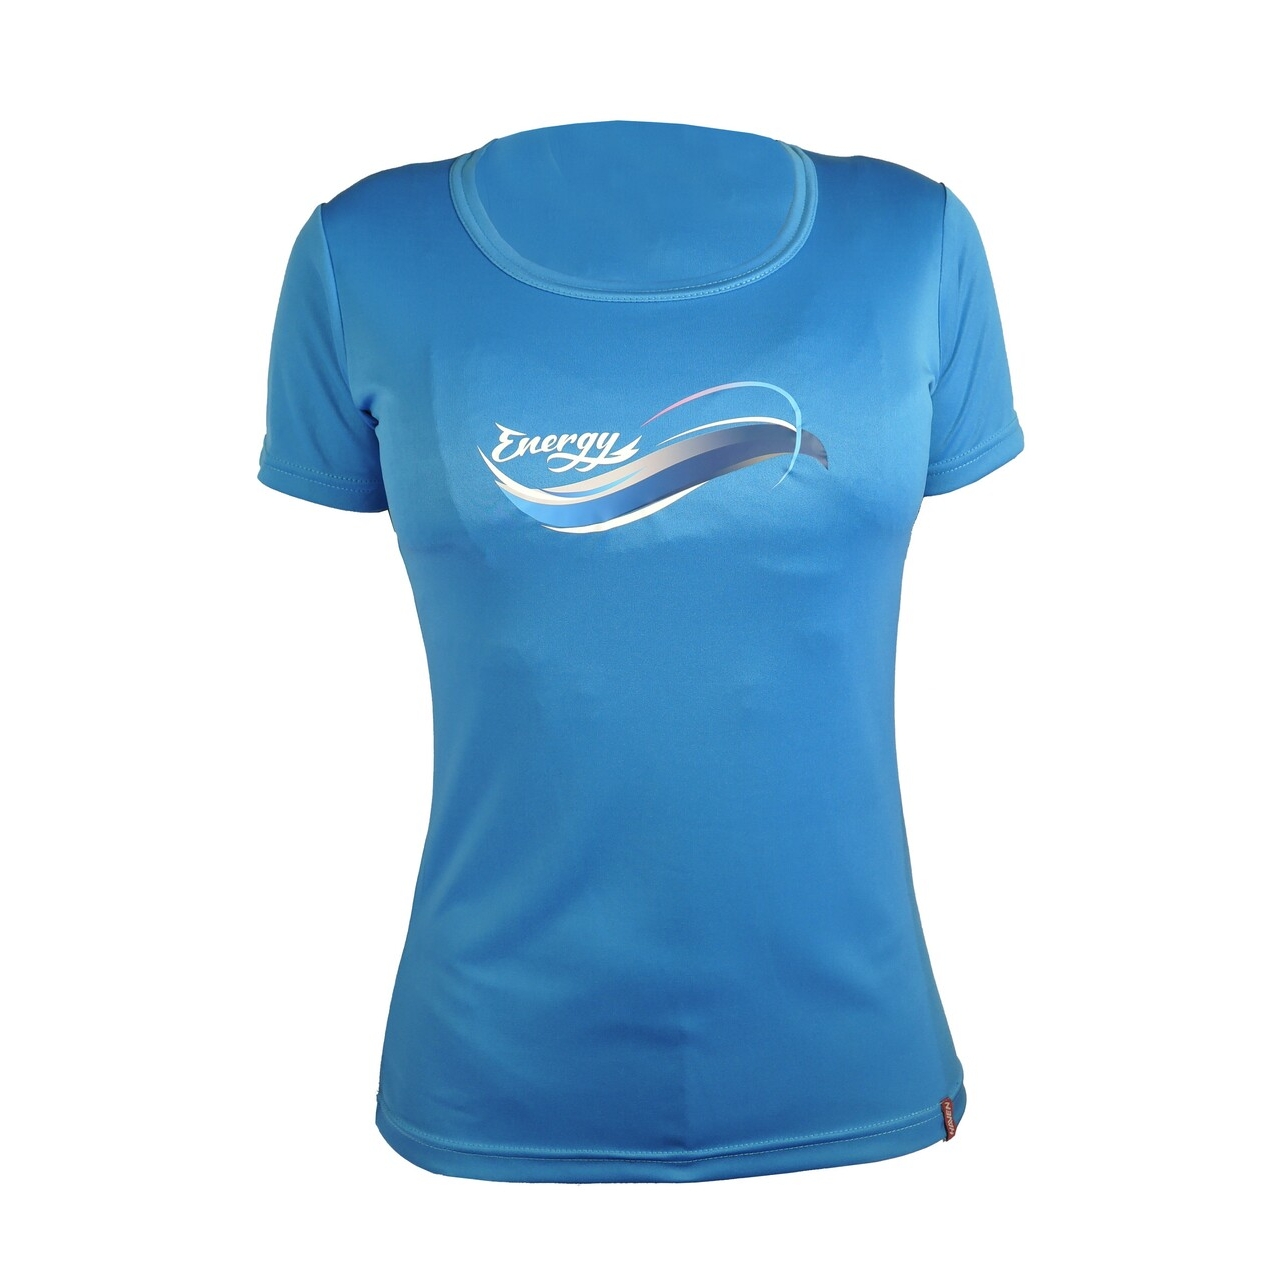 Tričko dámské s krátkým rukávem Haven Energy - modré, XL